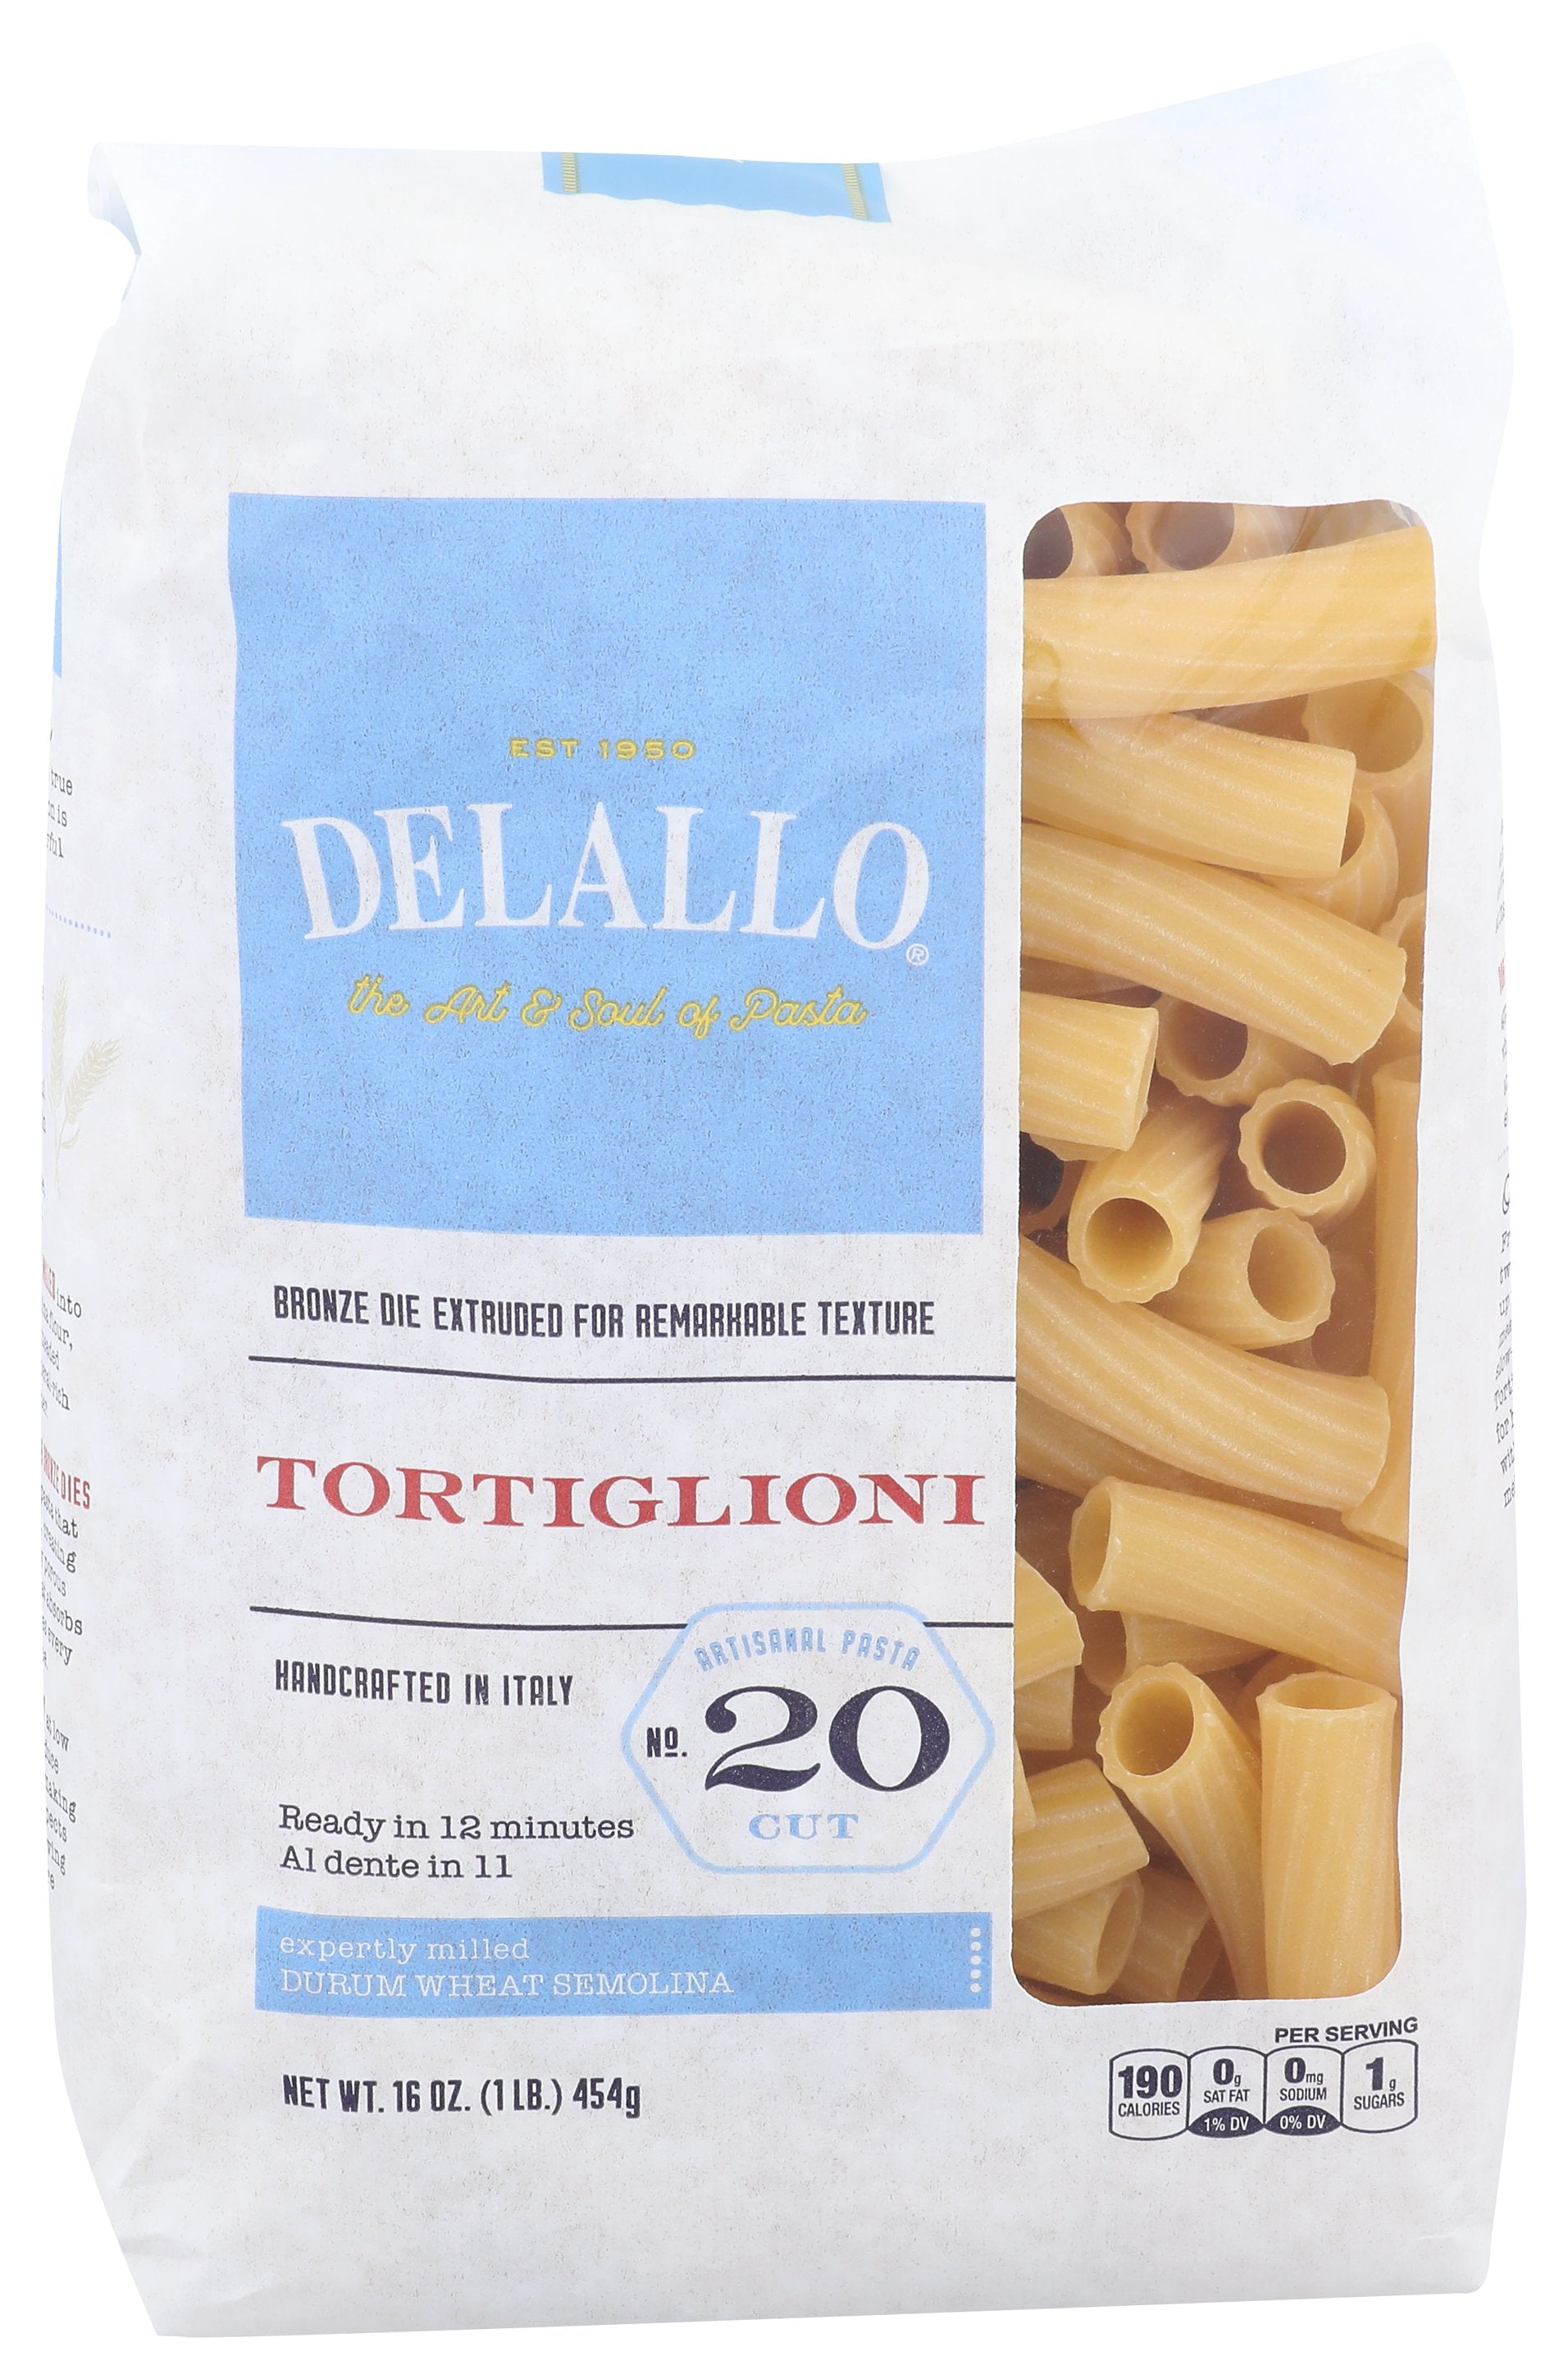 DELALLO TORTIGLIONI #20 - Case of 8